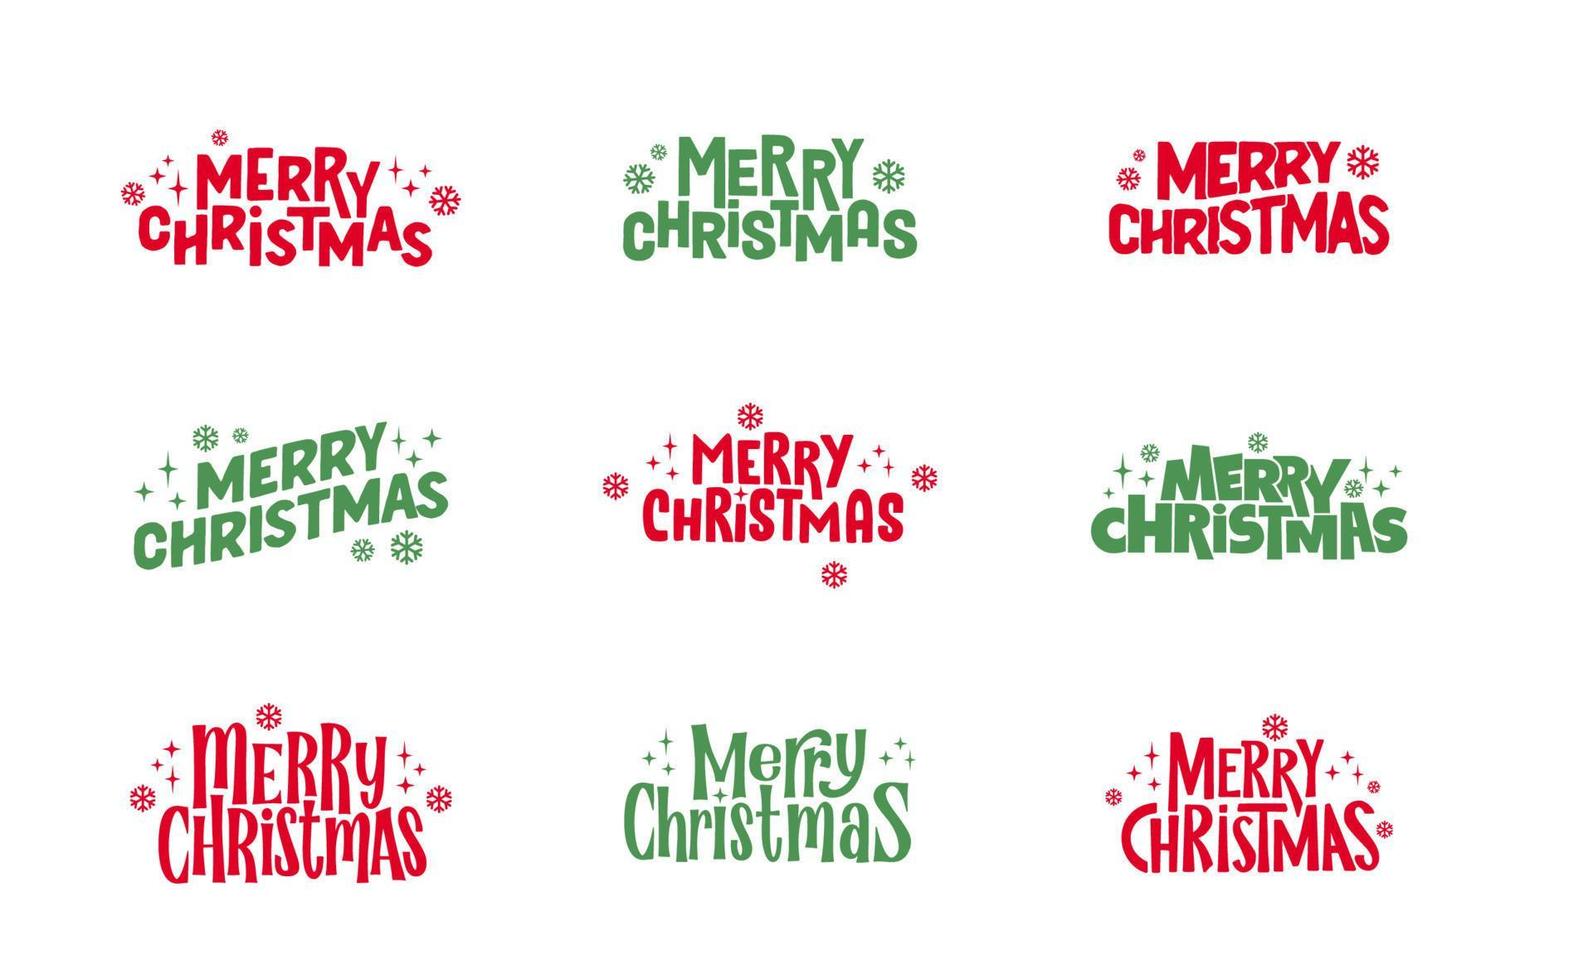 diseño tipográfico de letras de feliz navidad. diseño de texto de vacaciones de navidad. vector